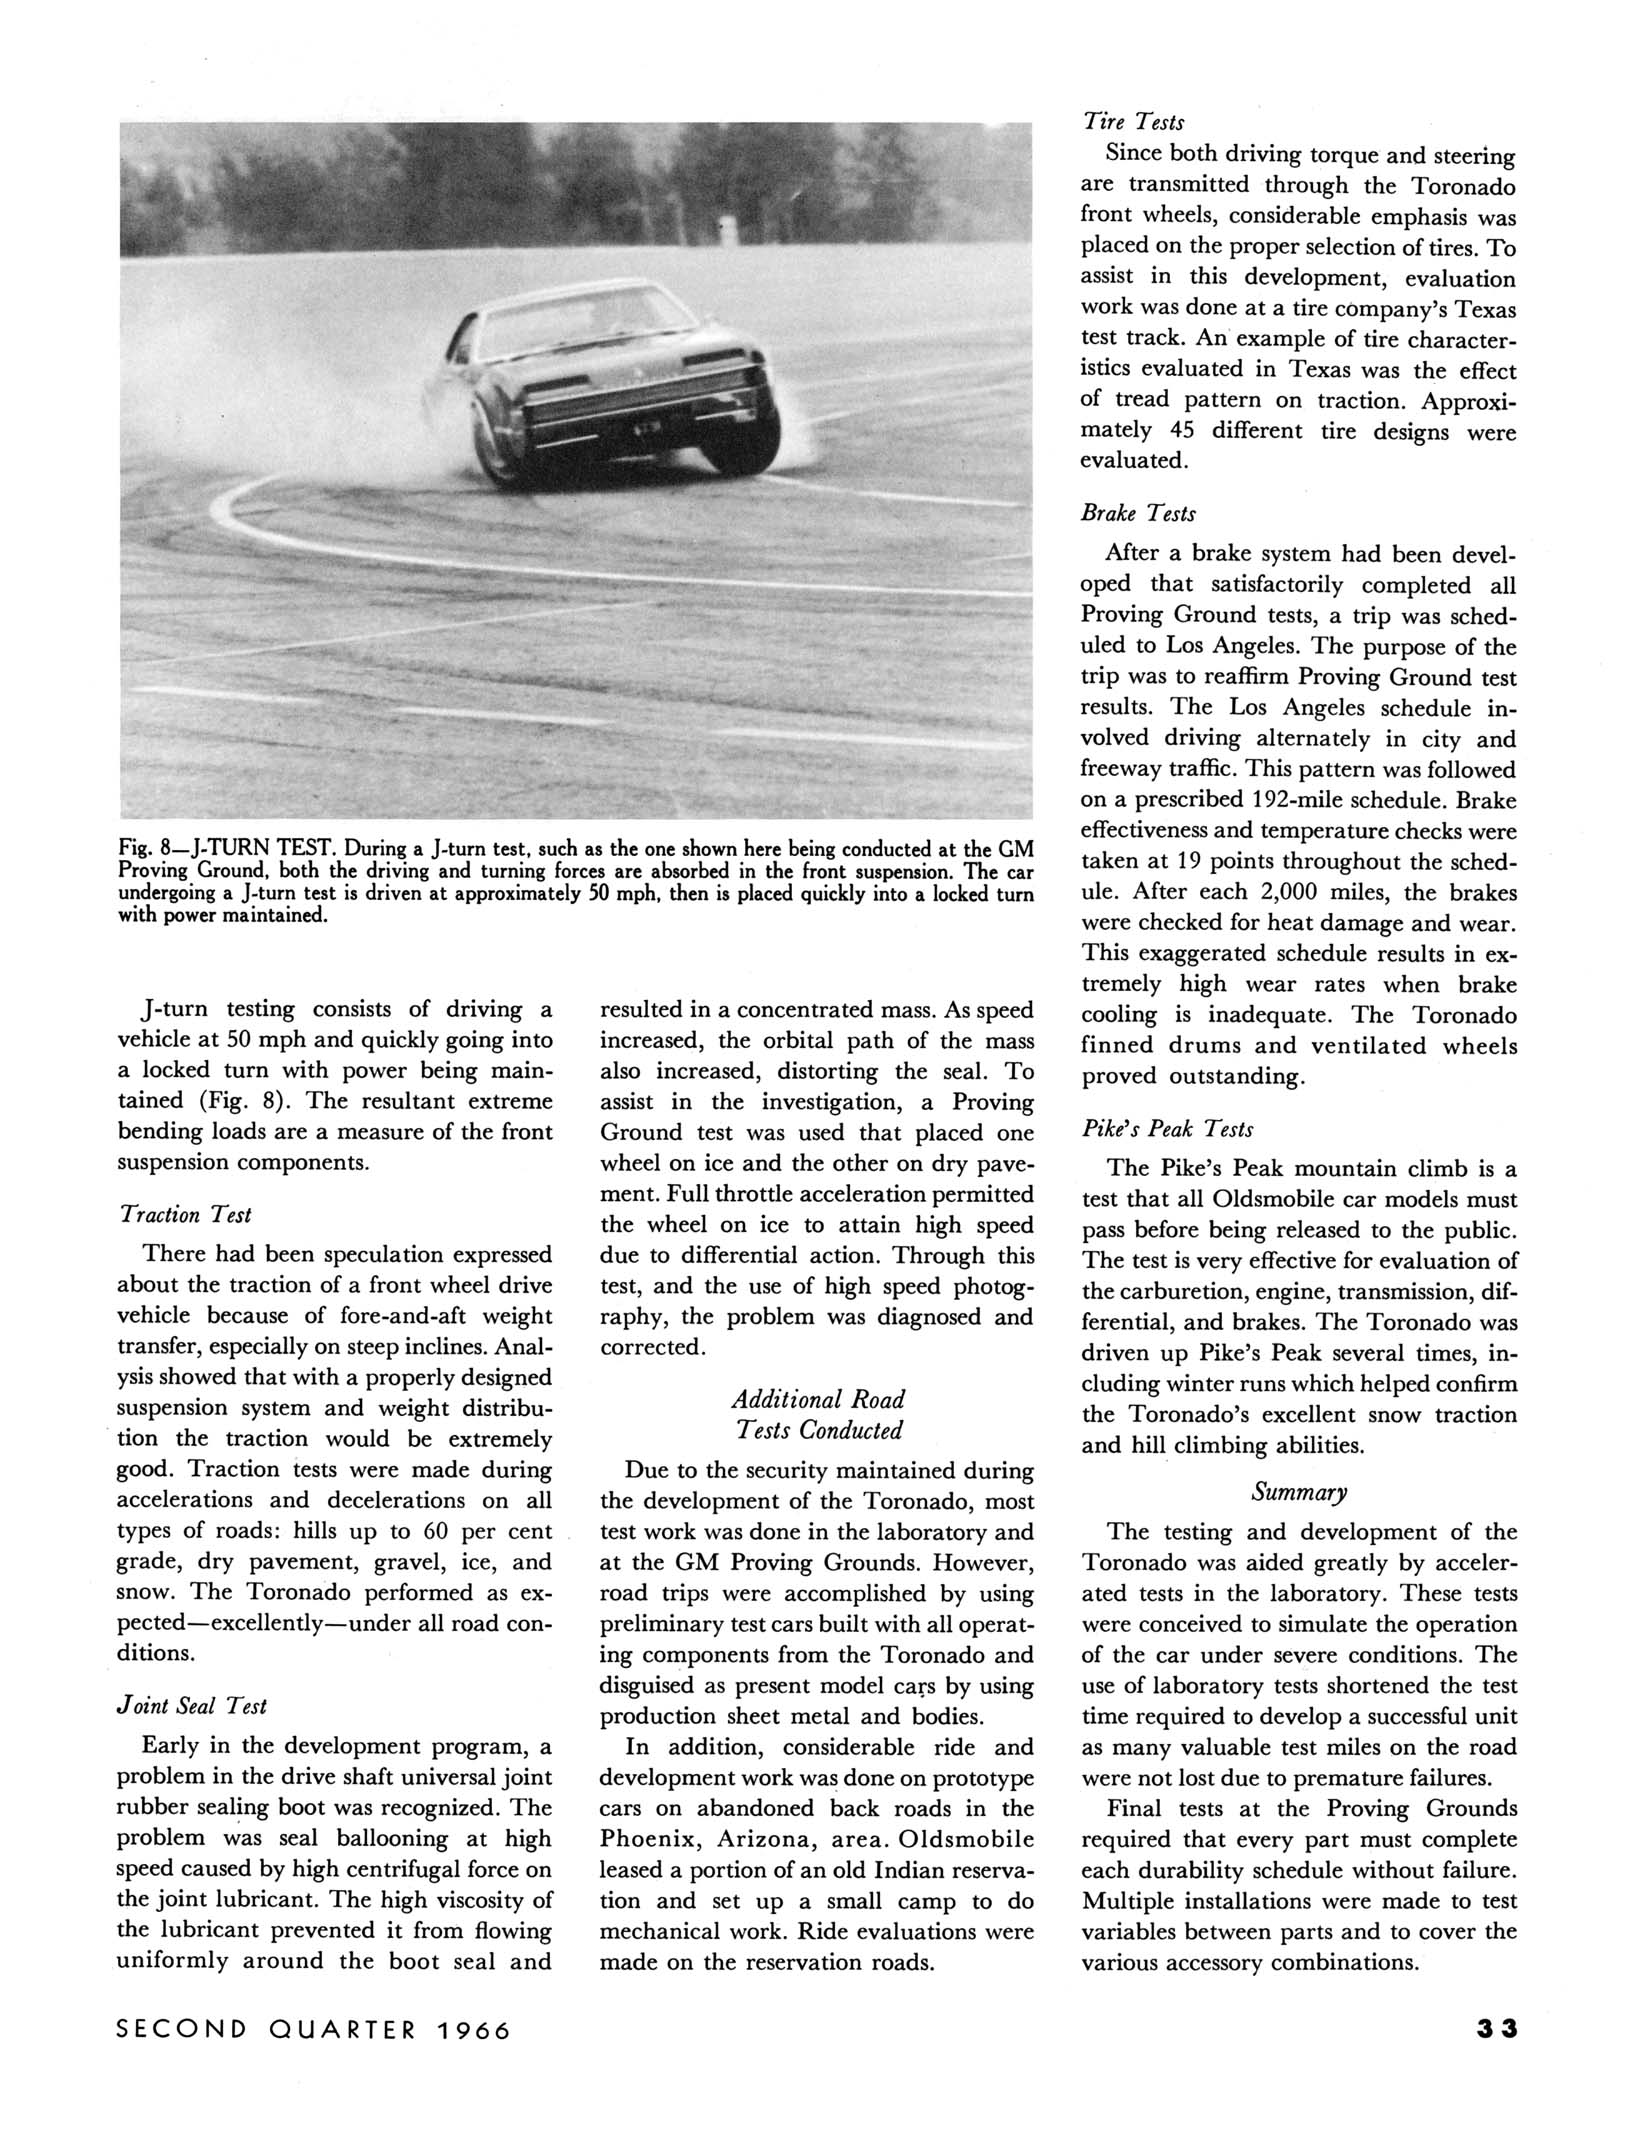 1966_GM_Eng_Journal_Qtr2-33